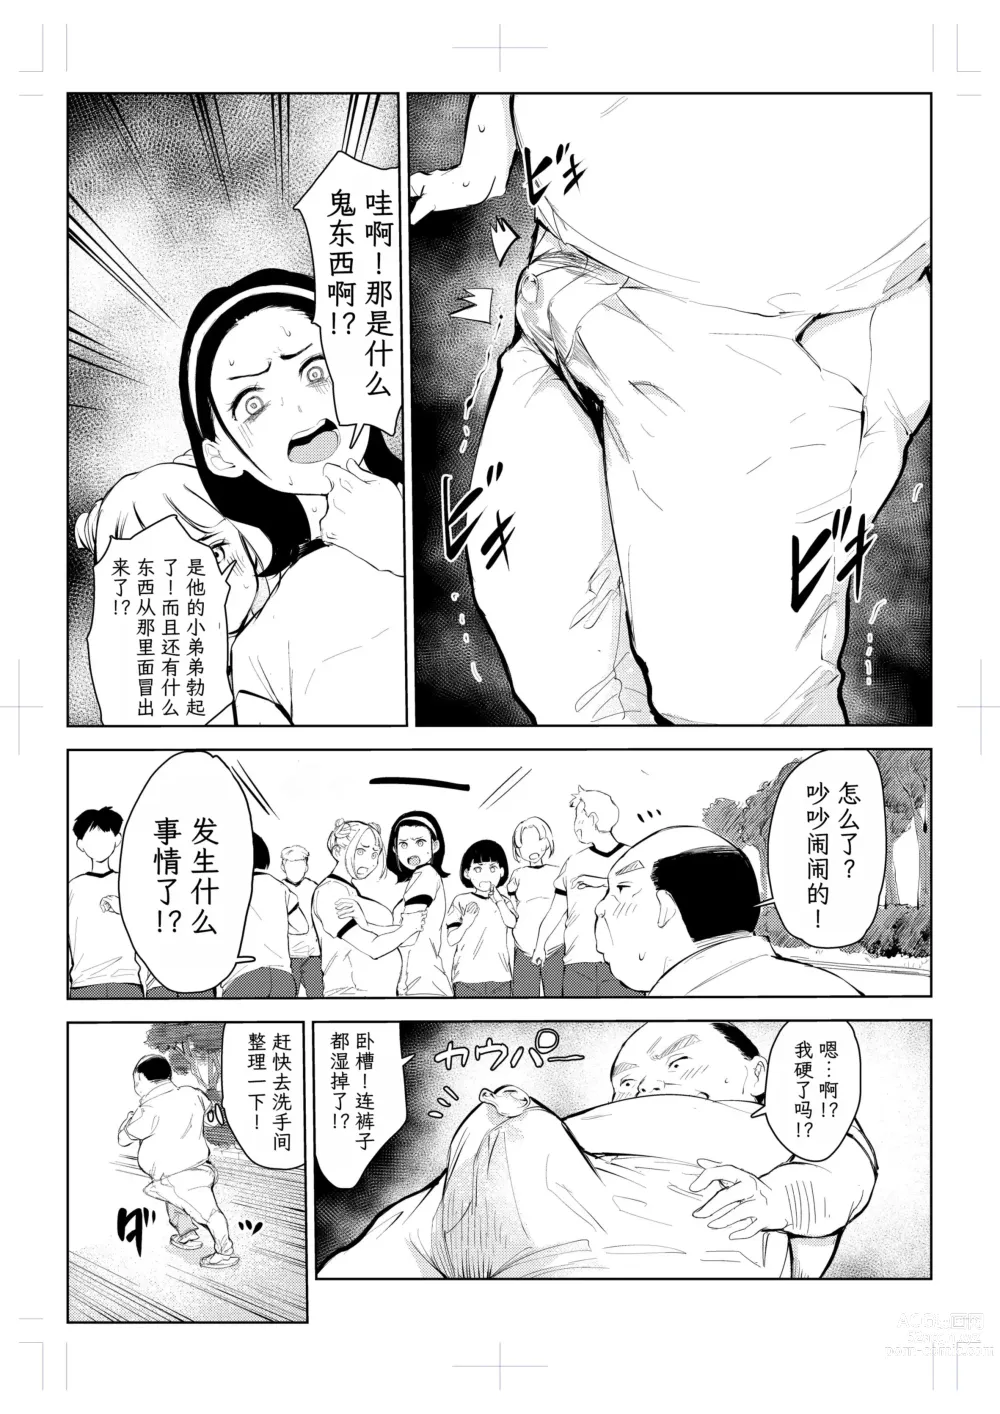 Page 12 of doujinshi 40-sai no Mahoutsukai 4